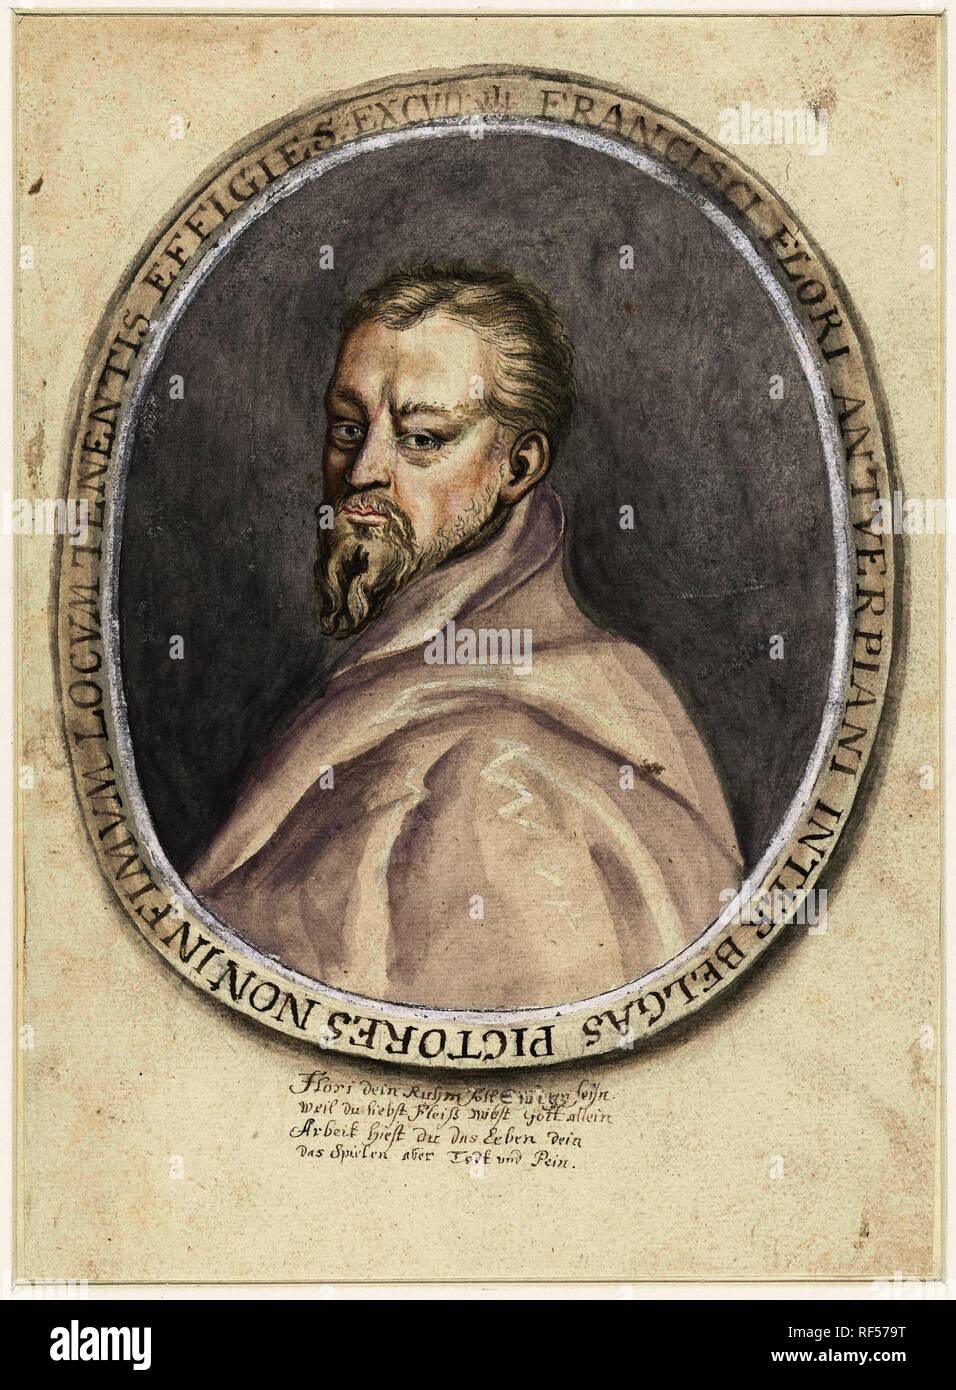 Portrait von Frans Floris. Artist: Giulio Bonasone (möglicherweise). Verfasser: Anonym. Datierung: 1550 - 1600. Maße: H 226 mm x B 166 mm. Museum: Rijksmuseum, Amsterdam. Stockfoto